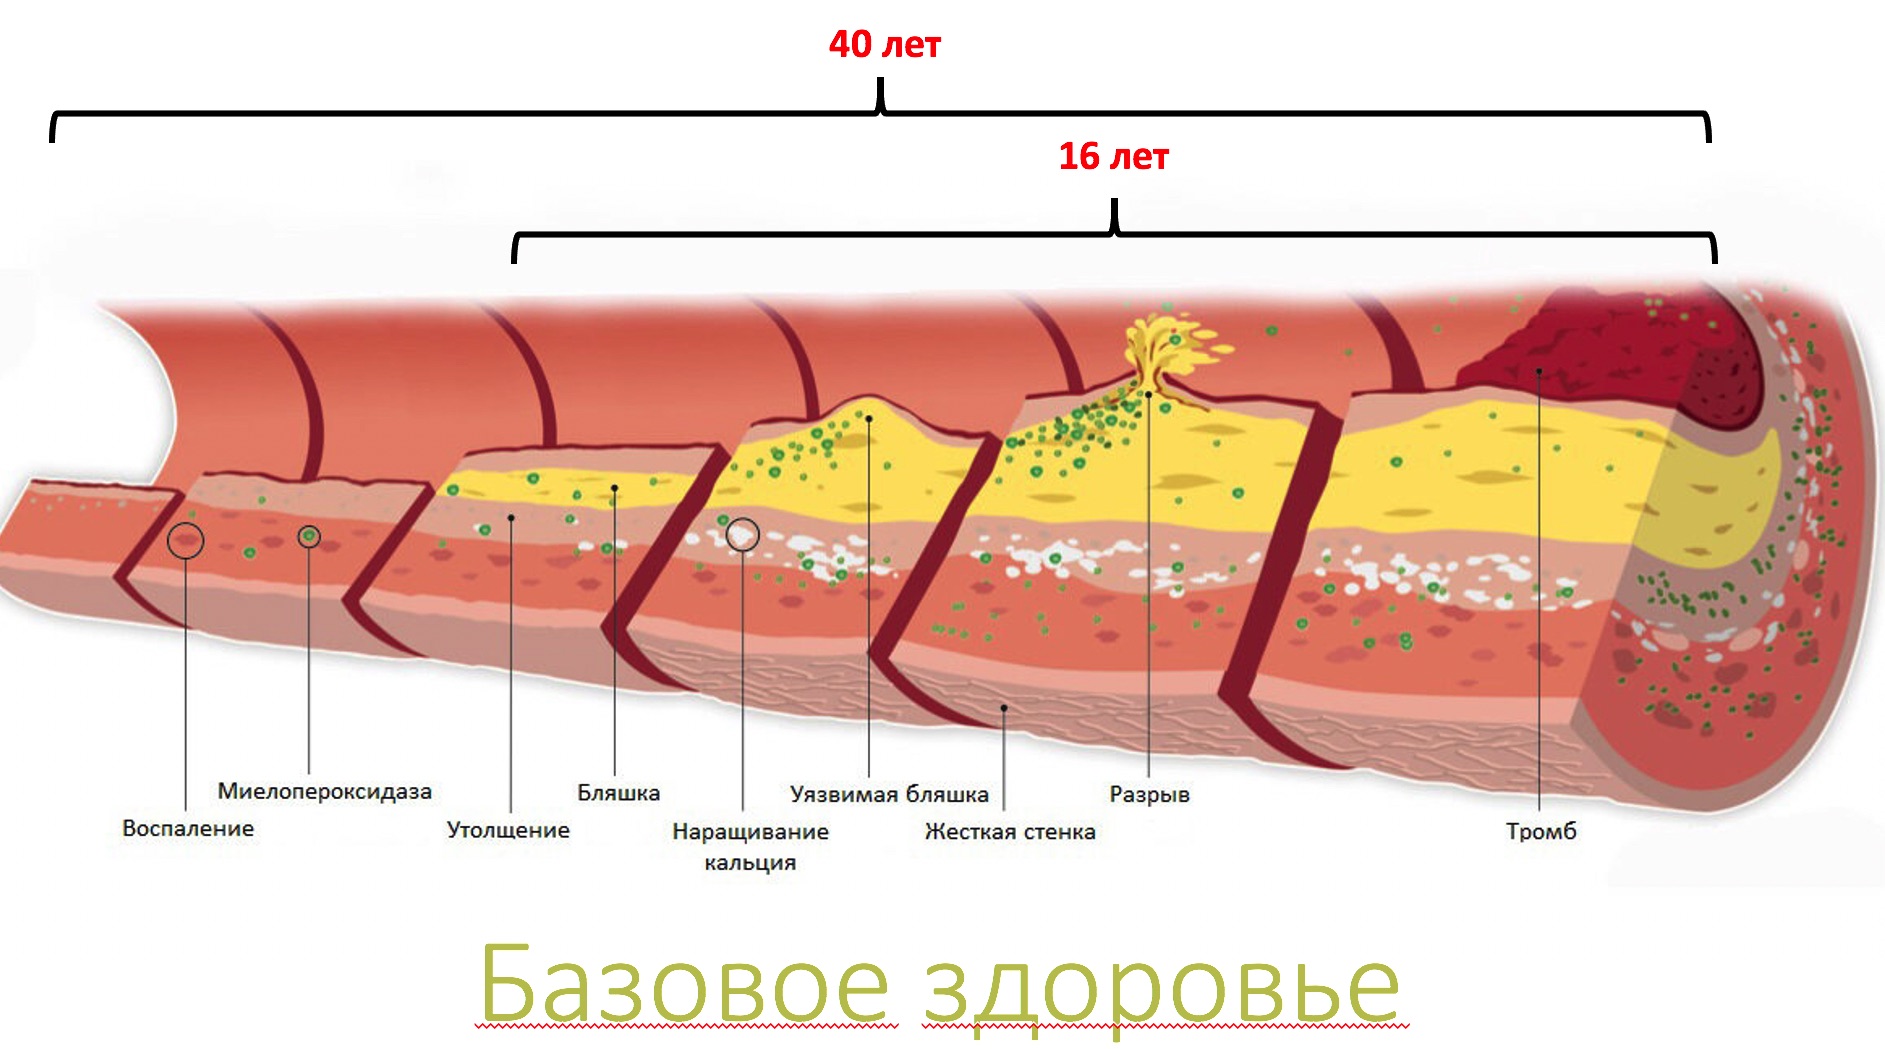 Разрыв бляшки. Ишемическая стадия атеросклероза. Атеросклероз коронарных артерий стадии и степени. Атеросклероз венечных артерий стадии и степень. Атеросклероз венечных артерий сердца.